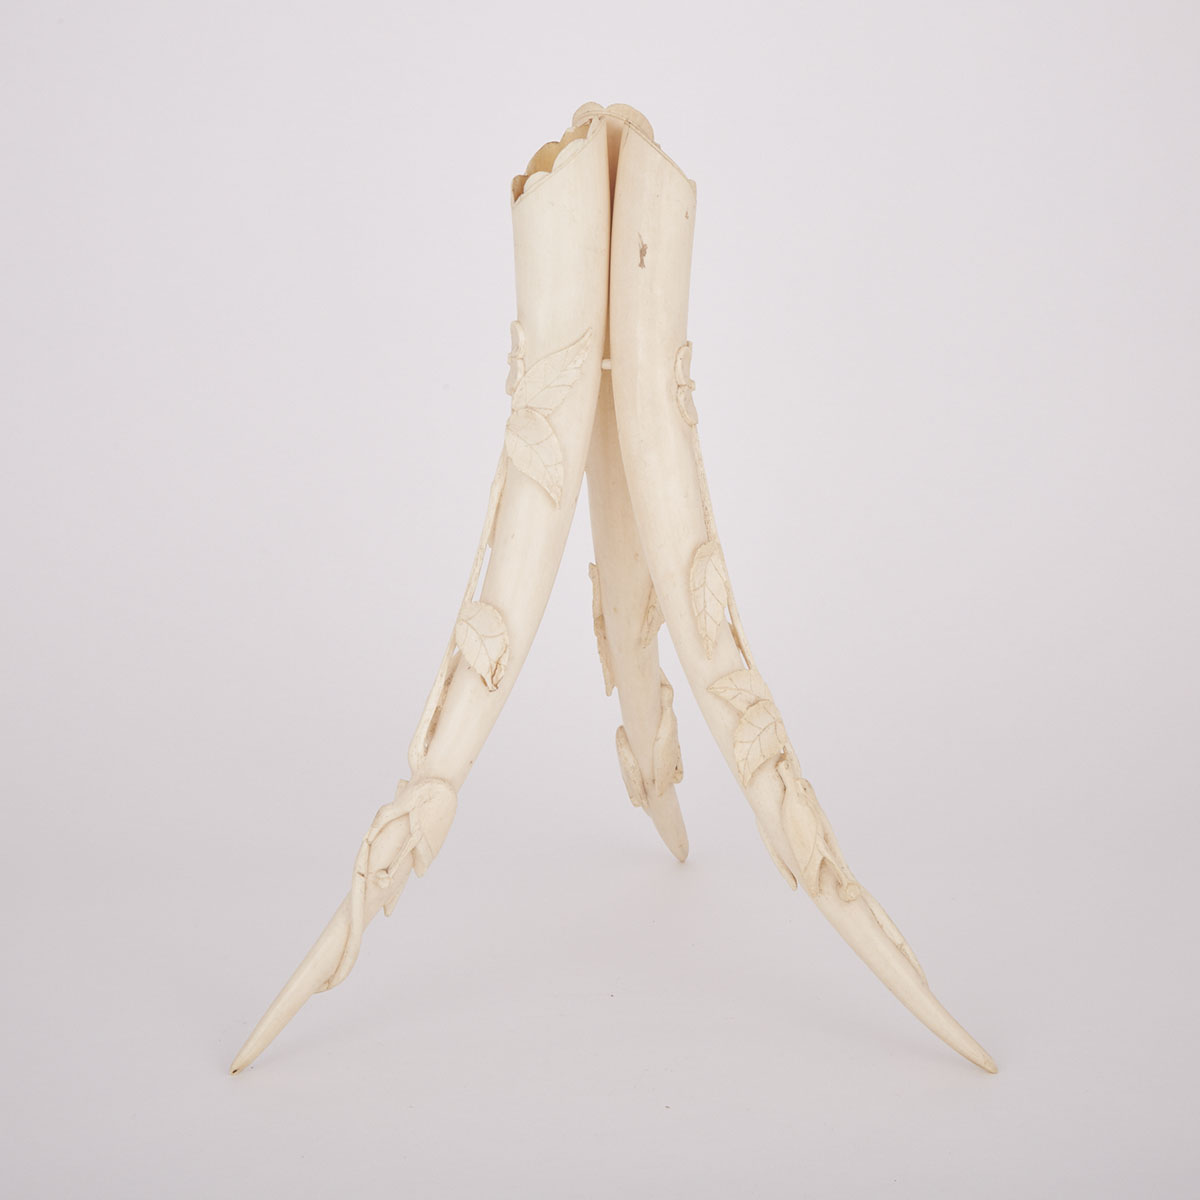 Three Carved Ivory Tusks